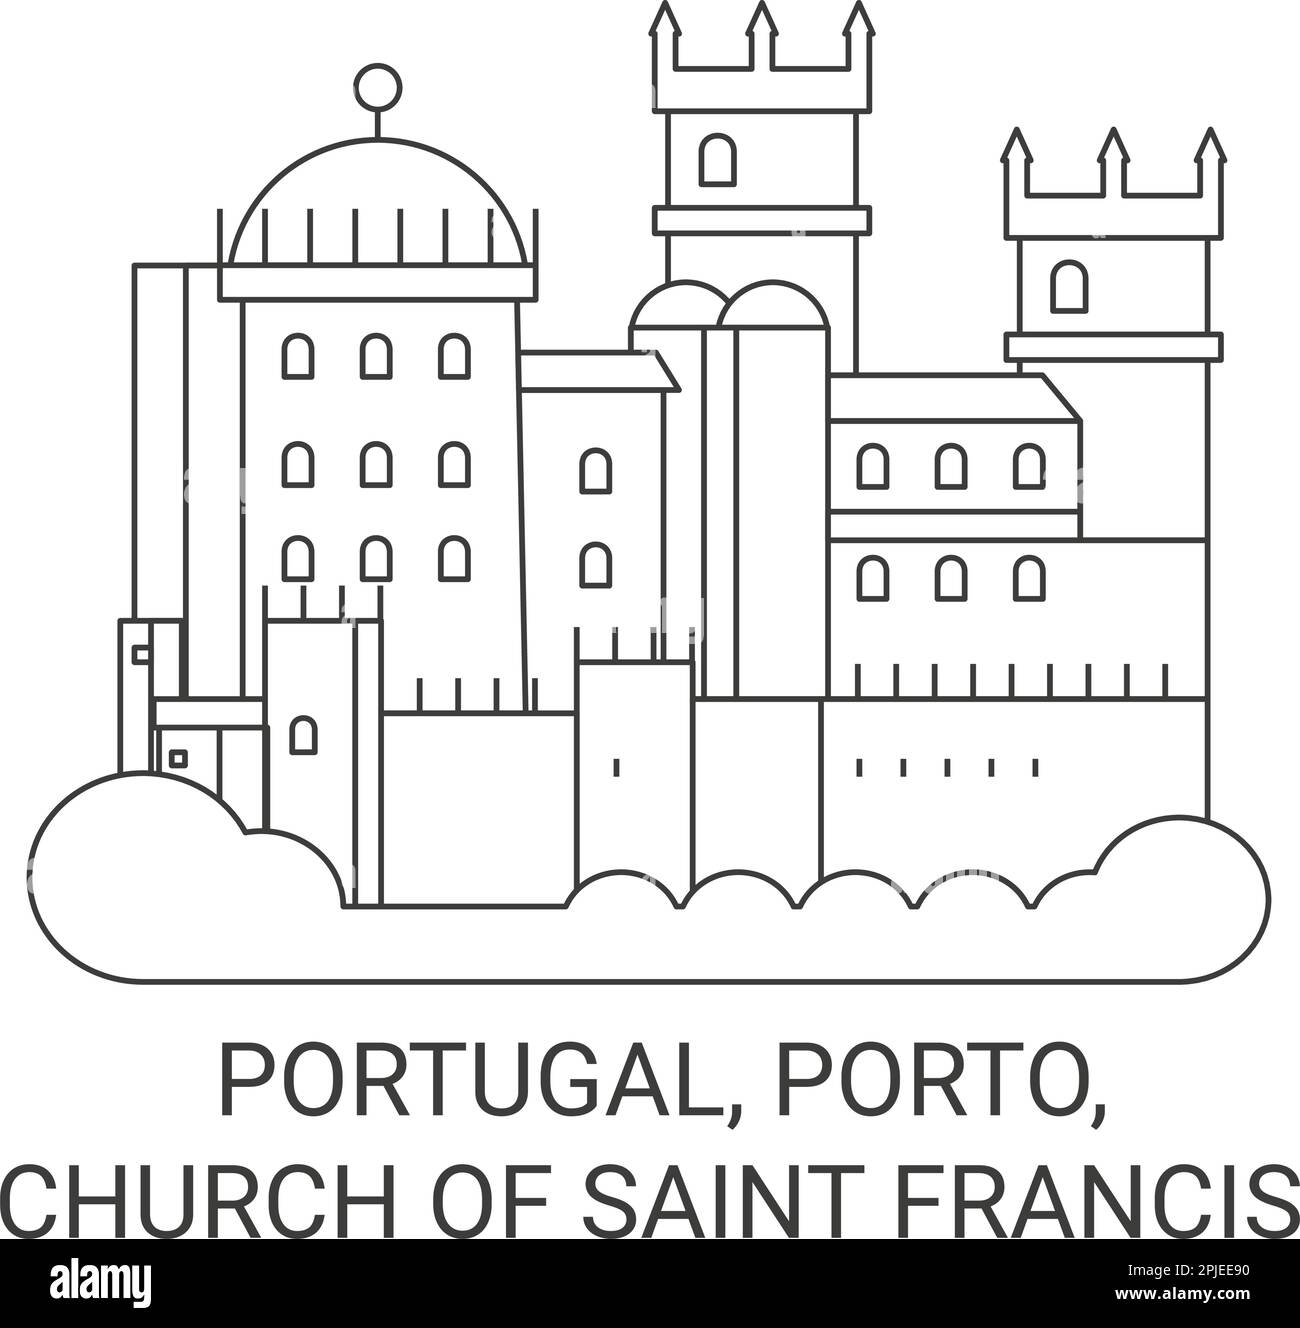 Portugal, Porto, Eglise de Saint François Voyage illustration vectorielle Illustration de Vecteur